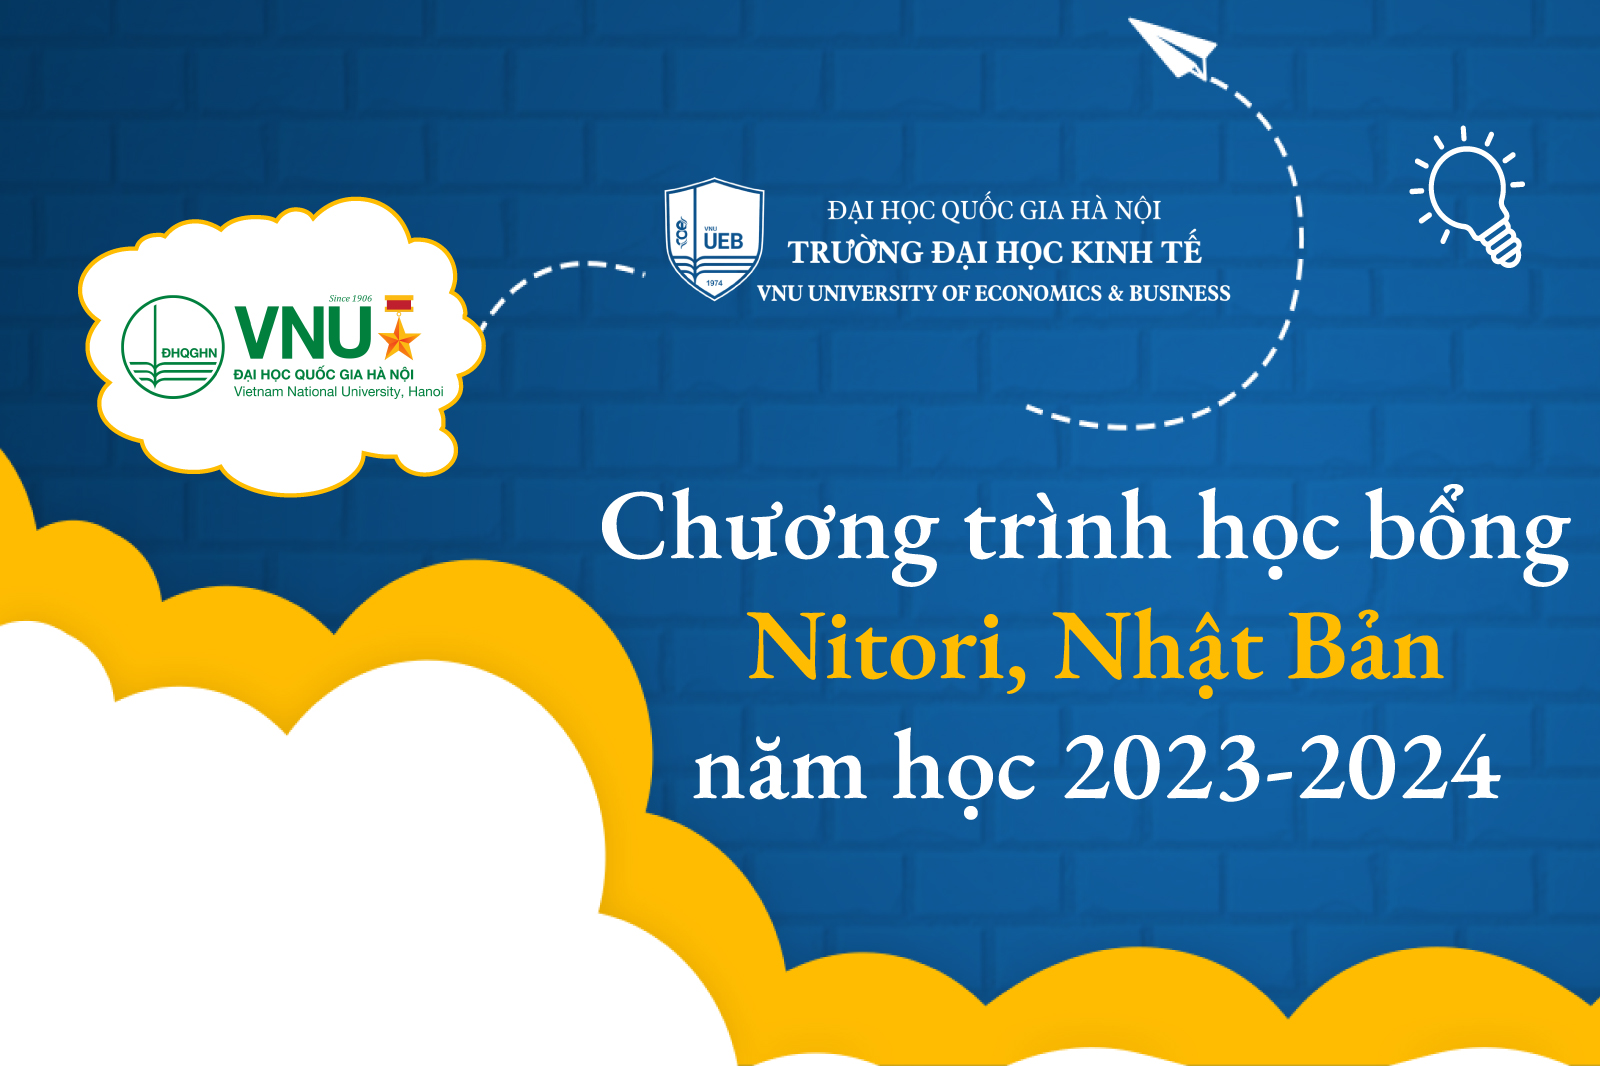 Chương trình học bổng Nitori, Nhật Bản năm học 2023-2024